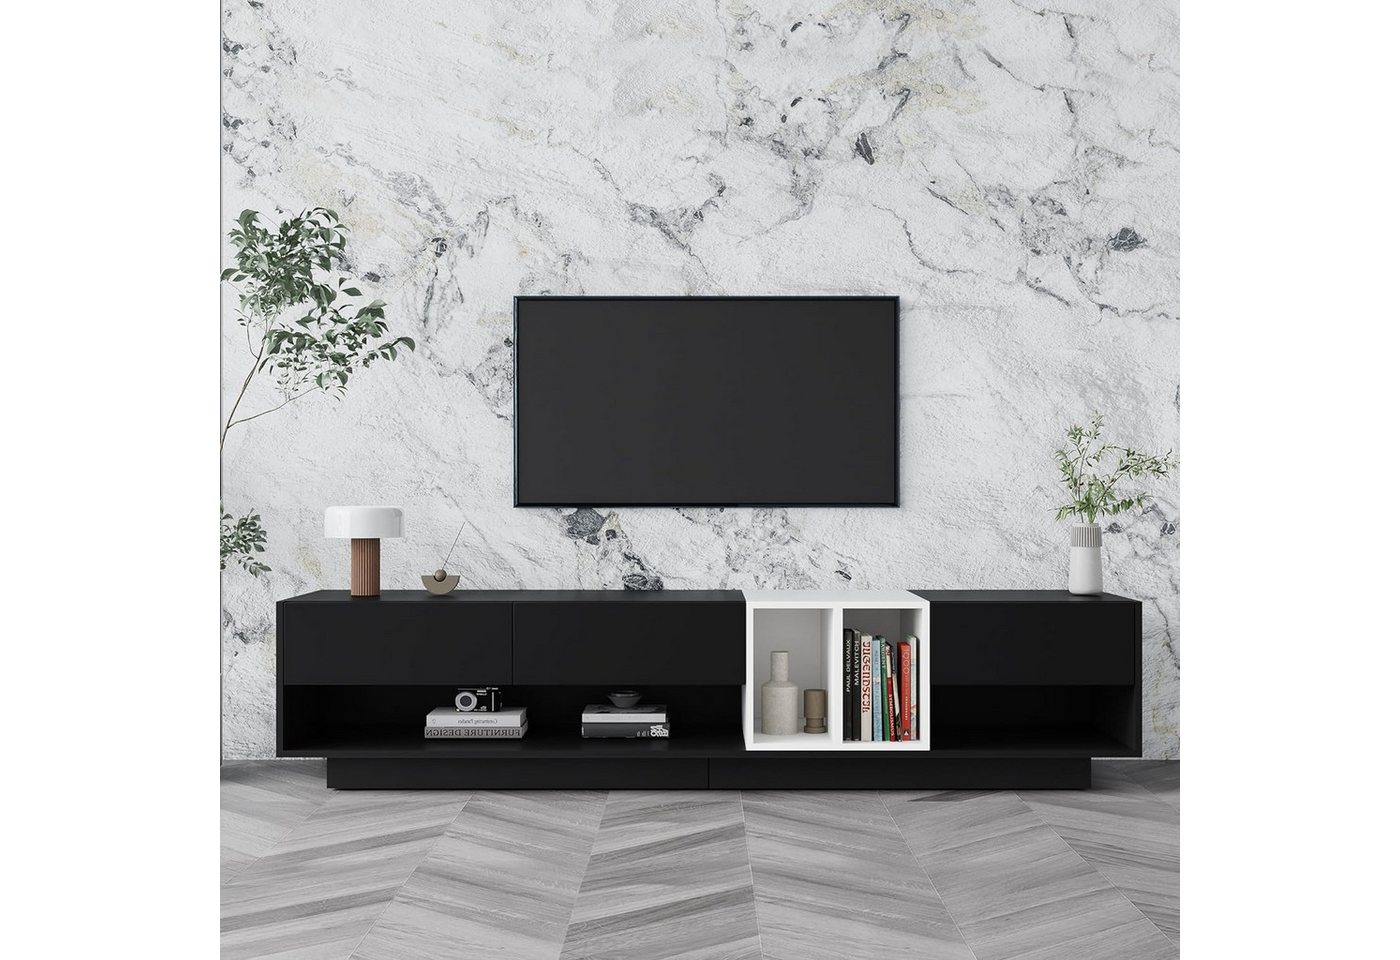 IDEASY TV-Schrank TV-Schrank mit geschlossenem Boden, schwarz-weißem Colour-Blocking (190 x 40 x 42cm Passend für Fernseher bis 80 Zoll) offenen Fächern und Schubladen zur Aufbewahrung von IDEASY